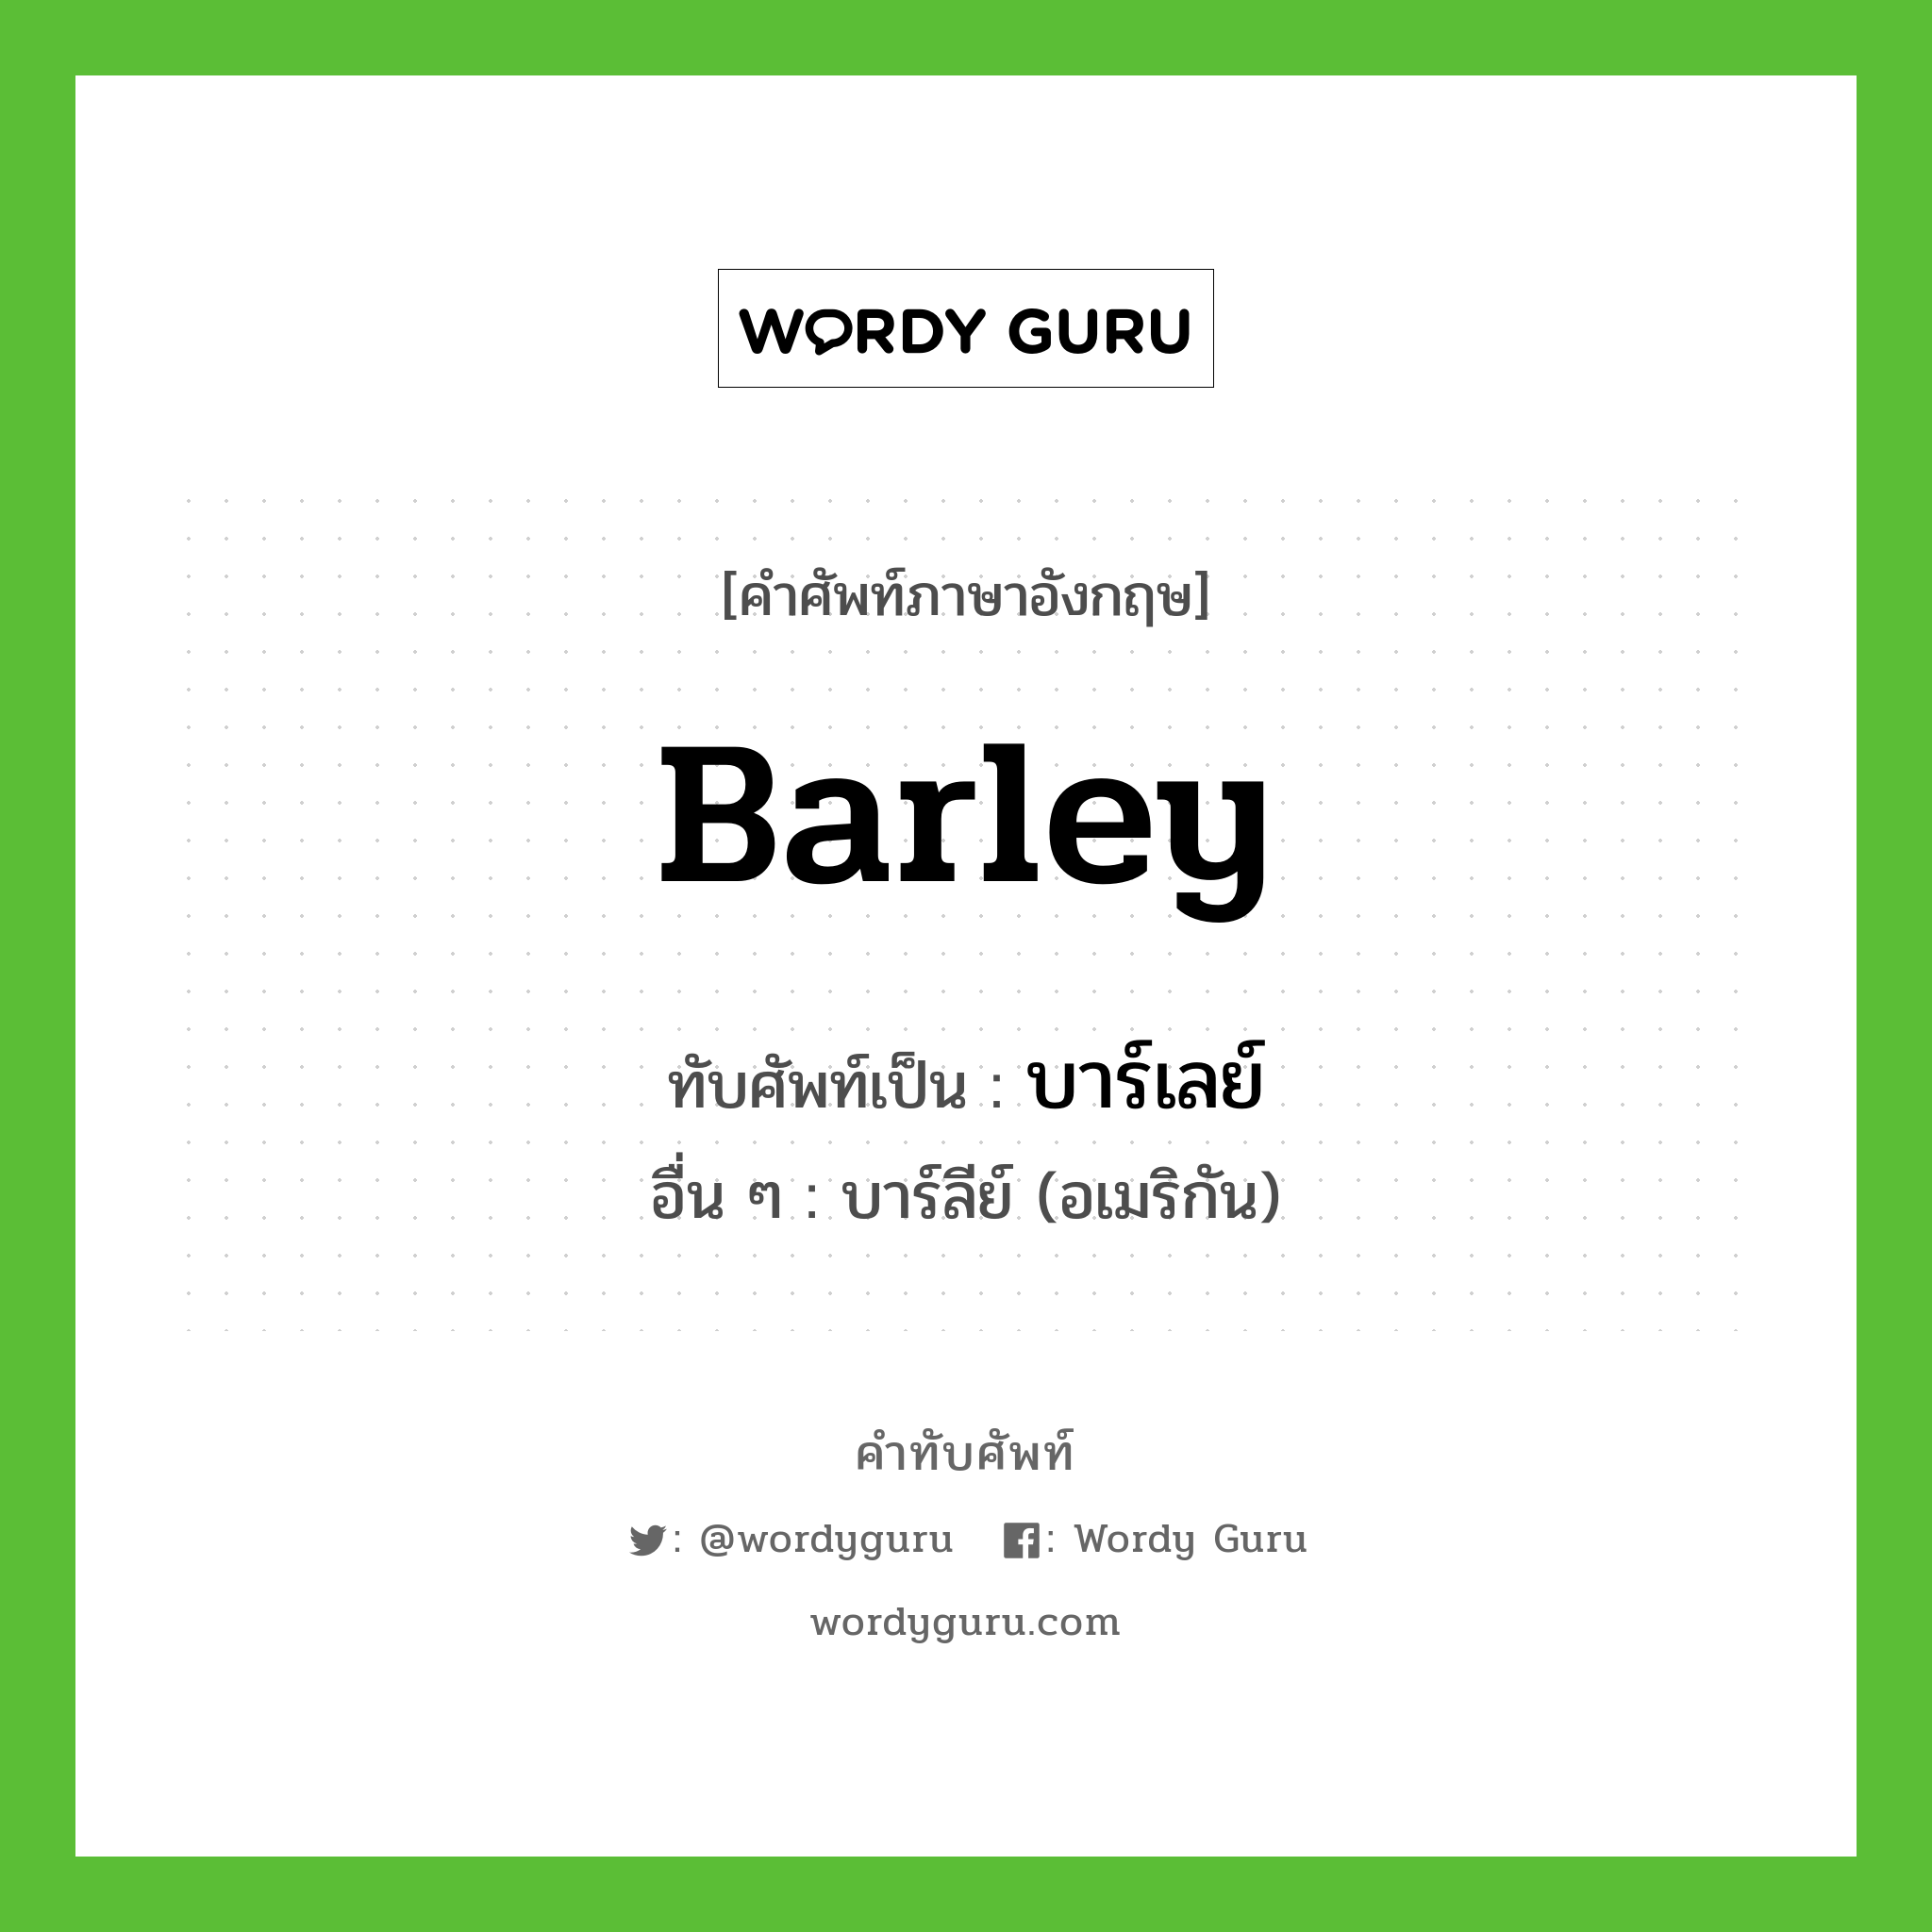 บาร์เลย์ เขียนอย่างไร?, คำศัพท์ภาษาอังกฤษ บาร์เลย์ ทับศัพท์เป็น barley อื่น ๆ บาร์ลีย์ (อเมริกัน)